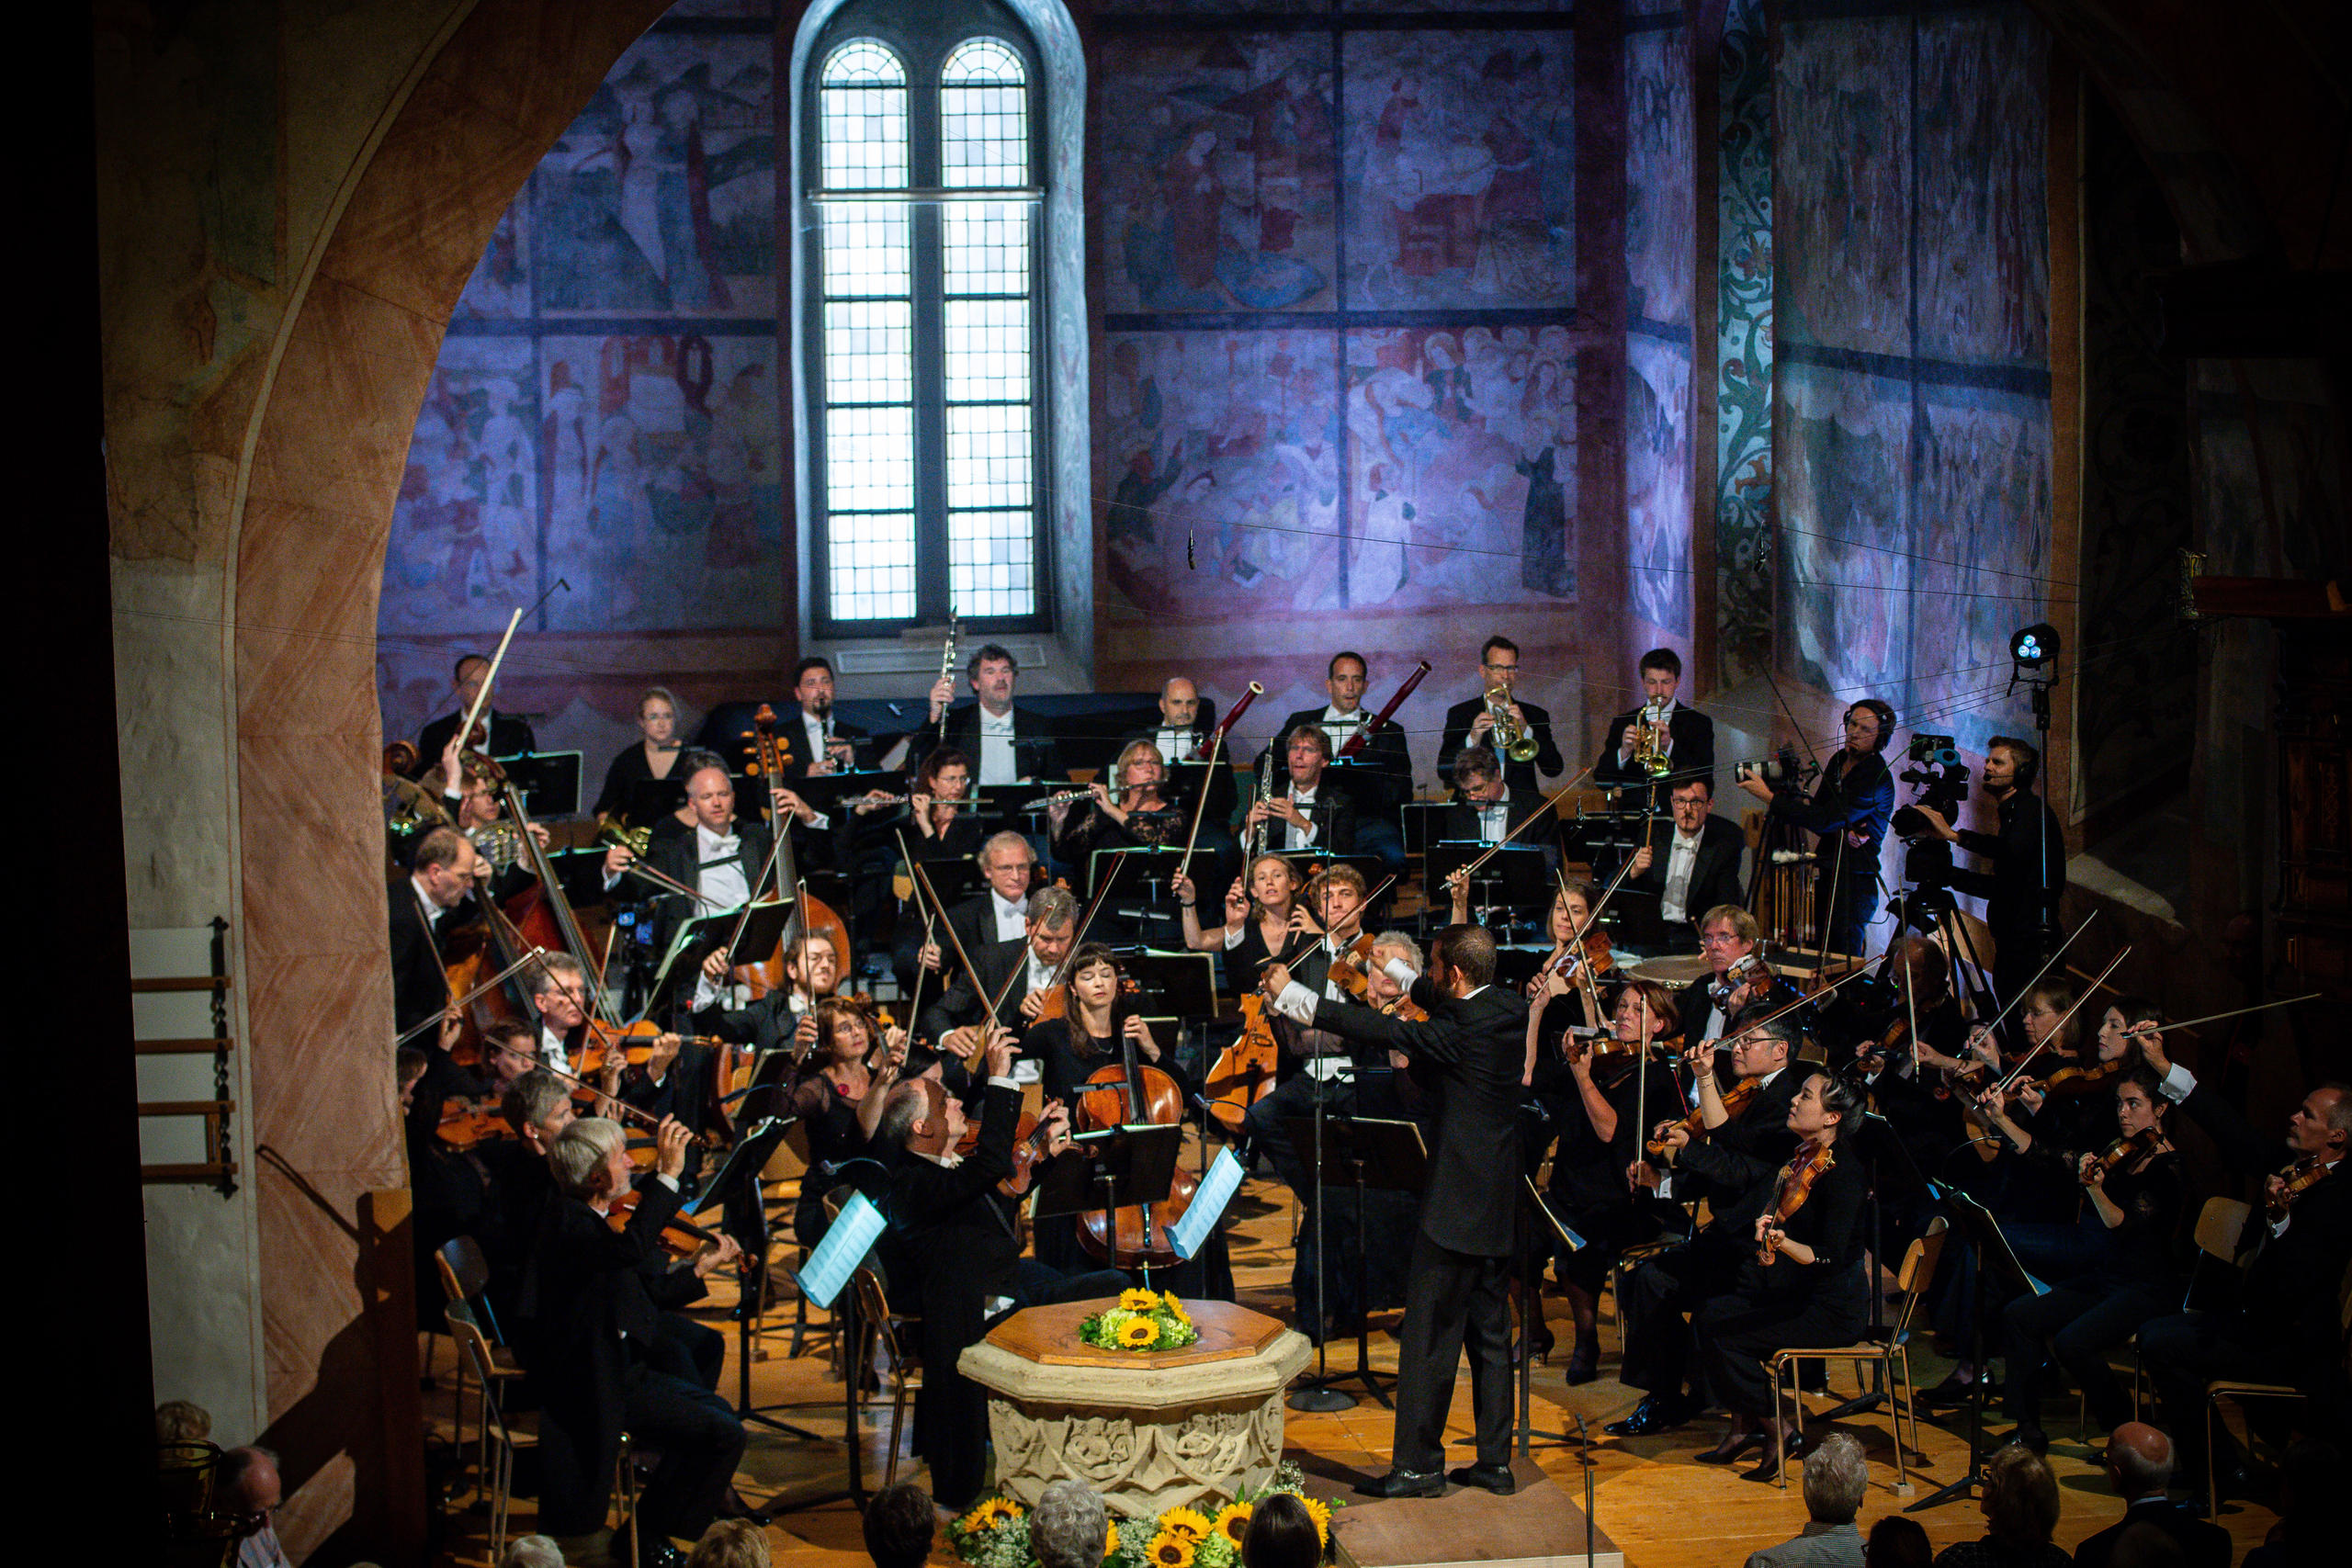 classical concert in a church